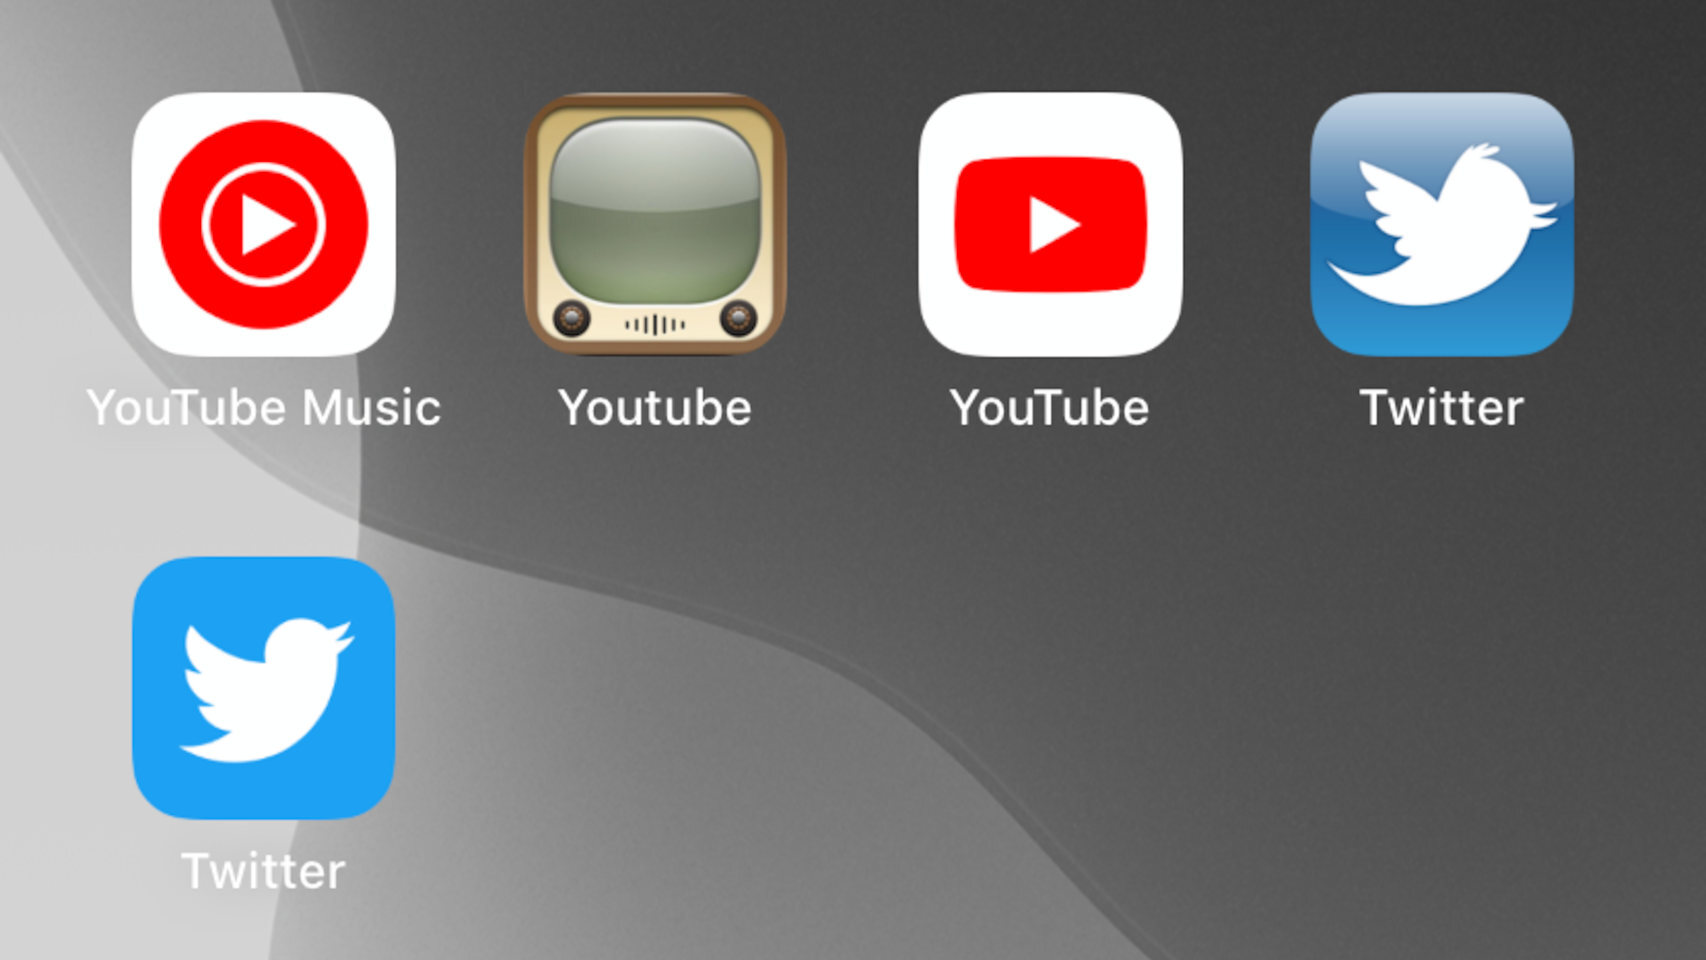 Iconos clásicos de apps de iOS, junto con los nuevos